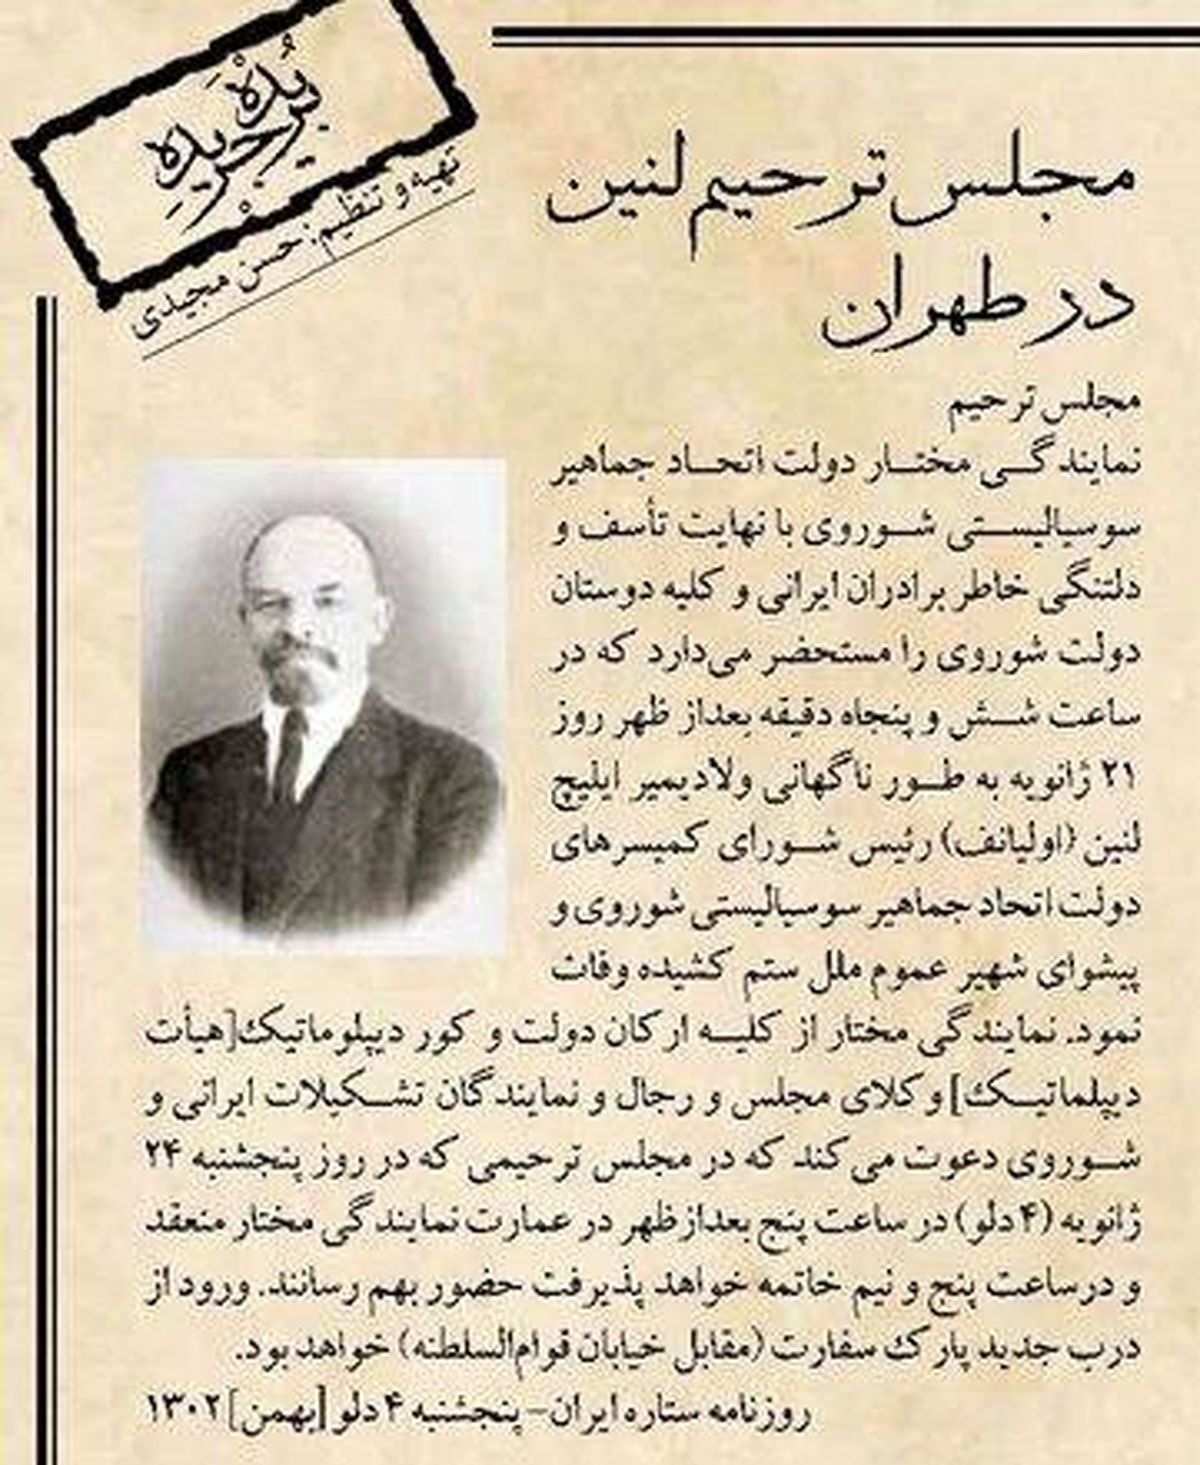 عکسی عجیب از مجلس ترحیم لنین ؛ 96 سال پیش در طهران